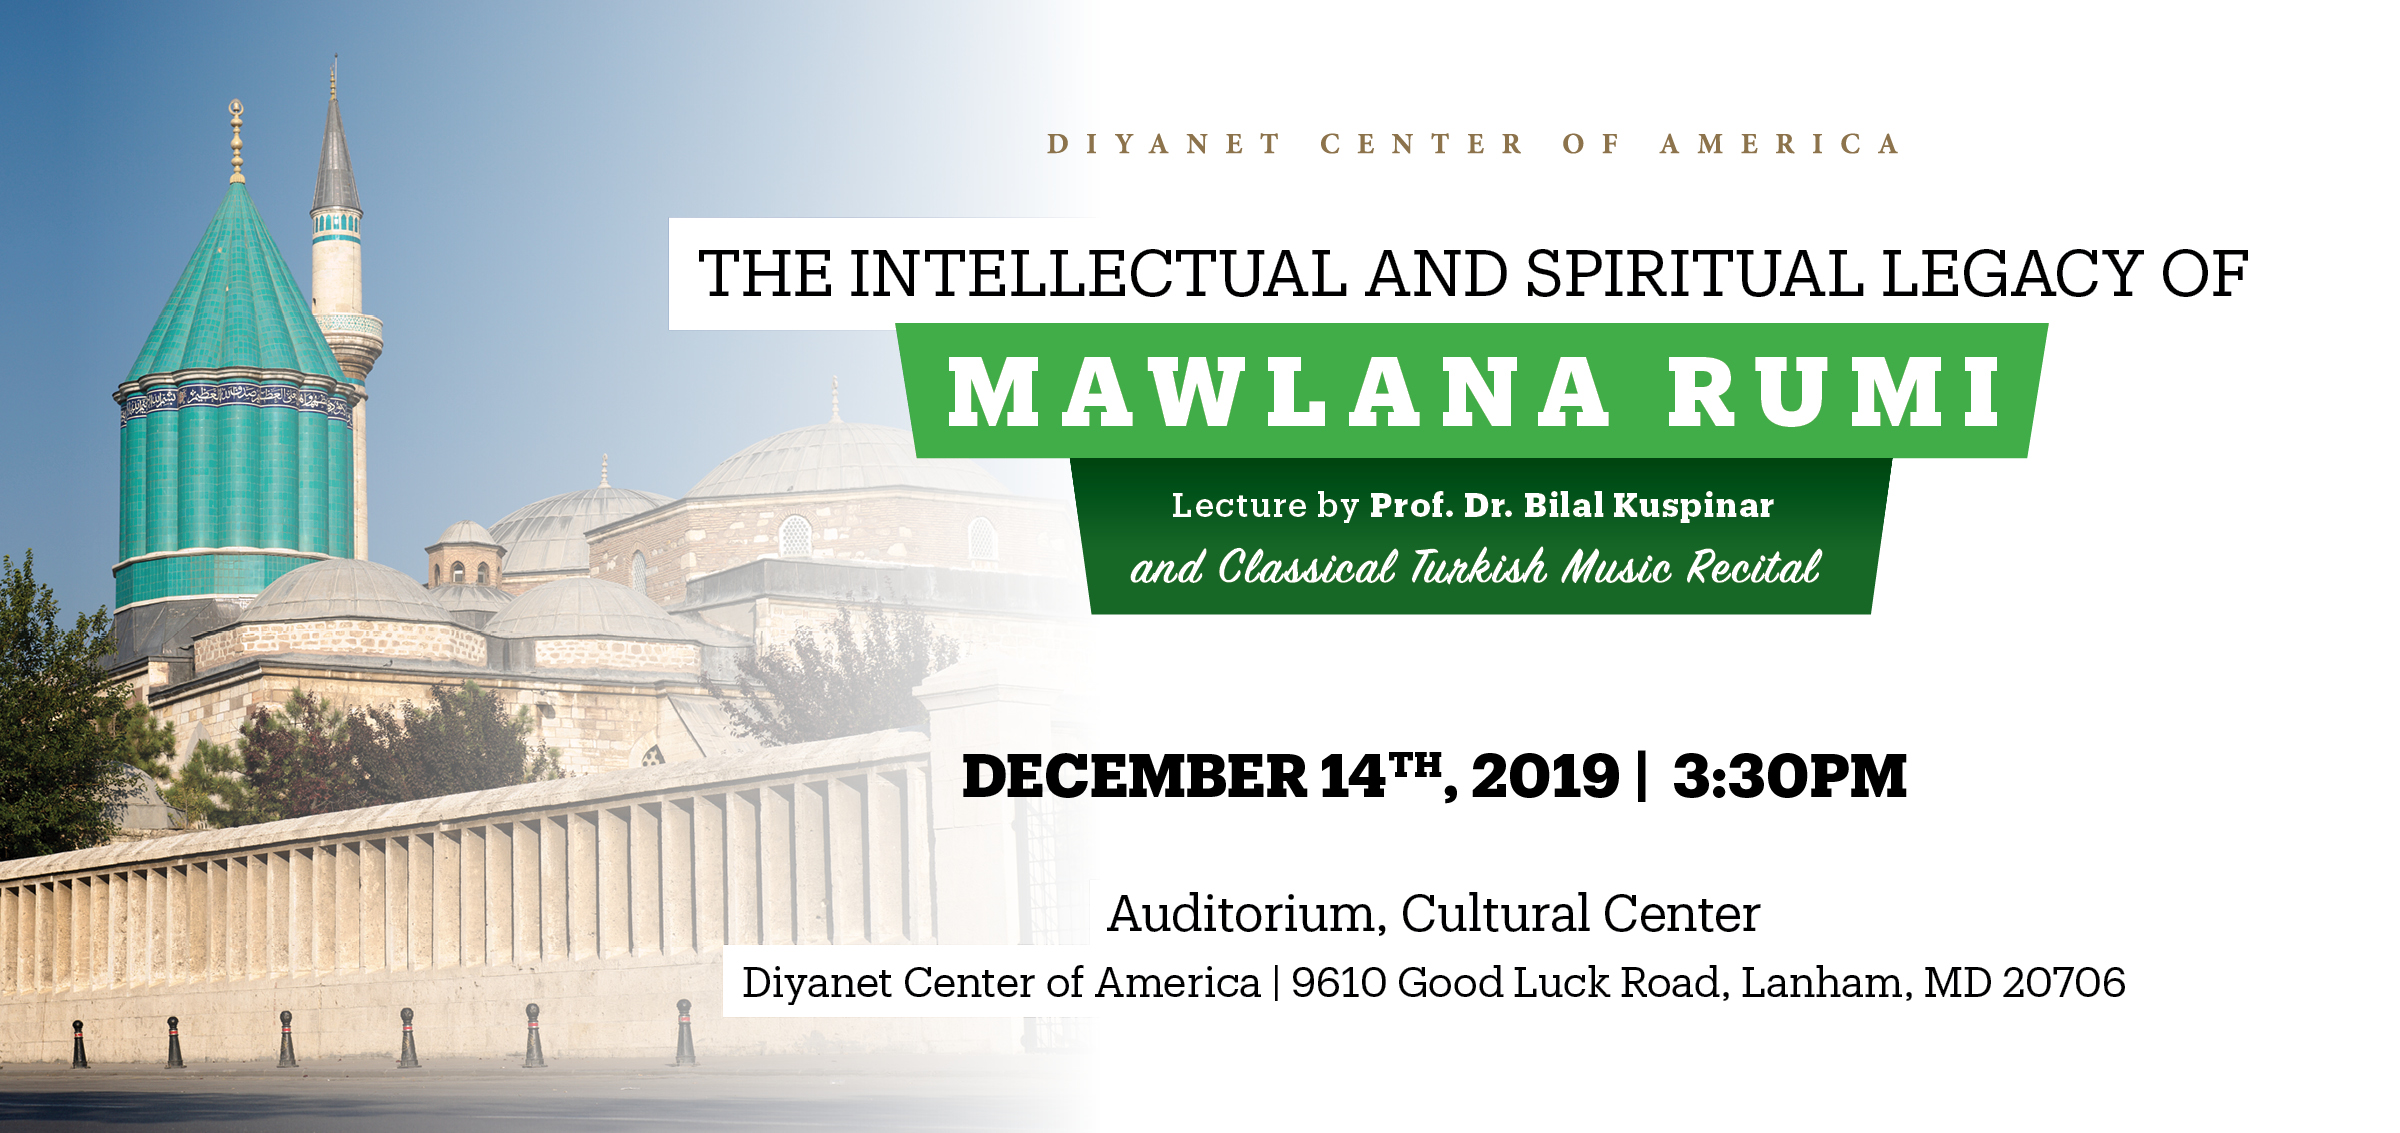 The Intellectual and Spiritual Legacy of Mawlana Rumi